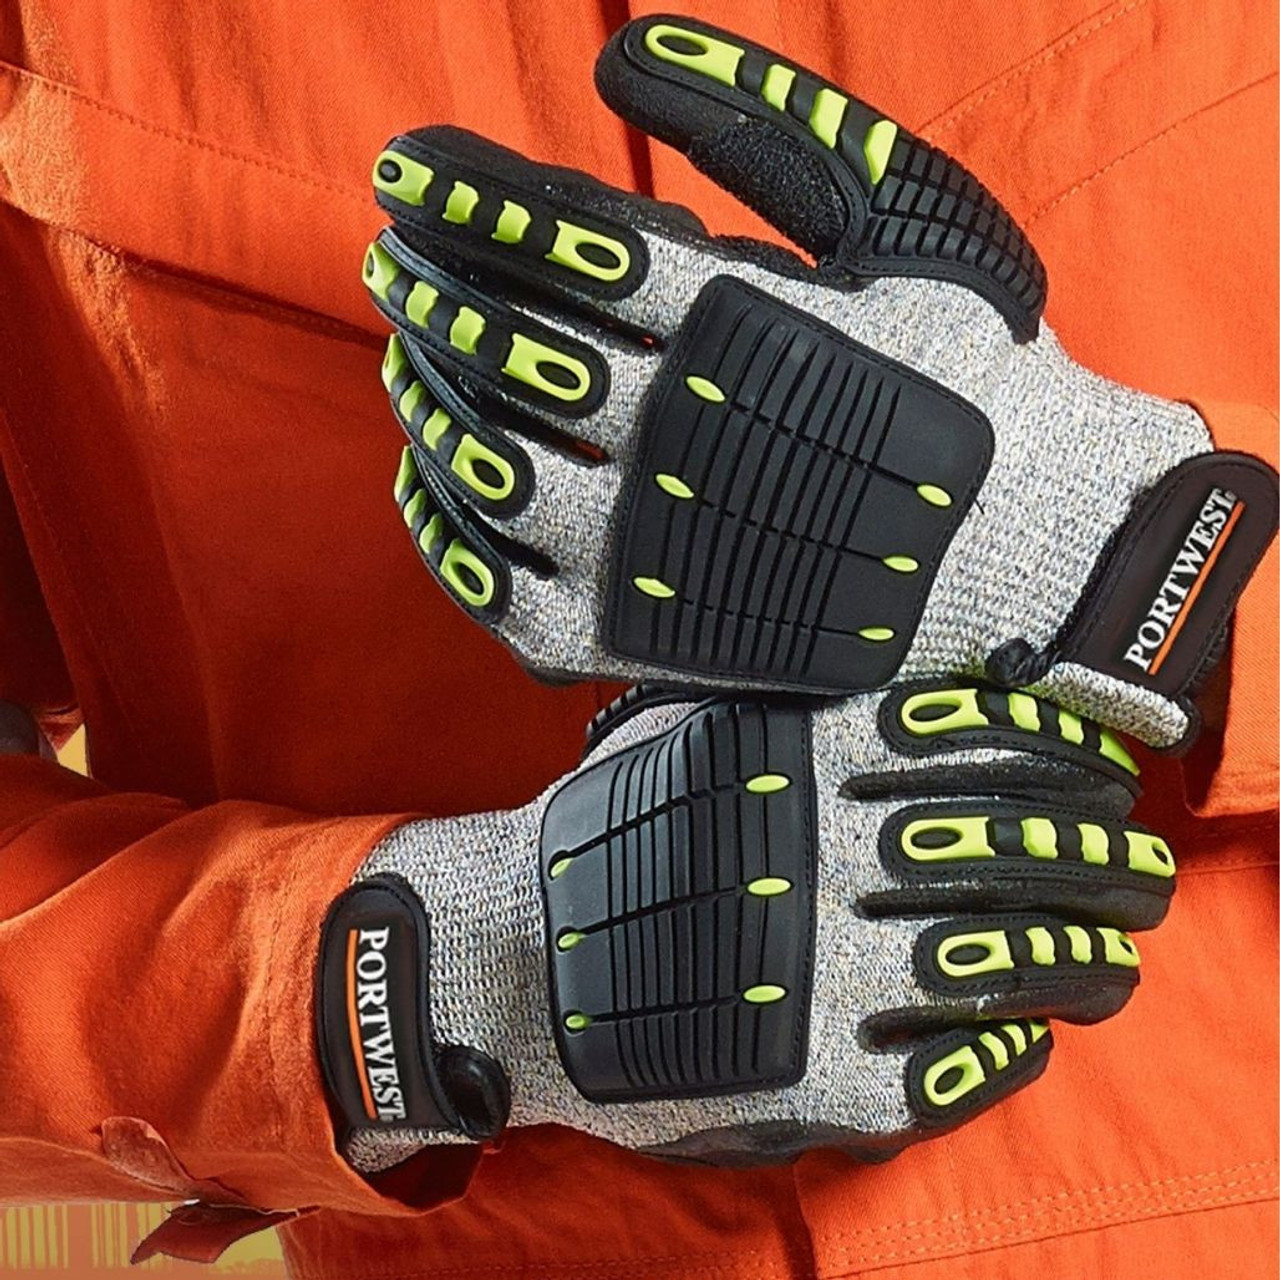 Portwest A722 Anti Impact Nitrile Coated Glove, Cut Level A4, 1/pr